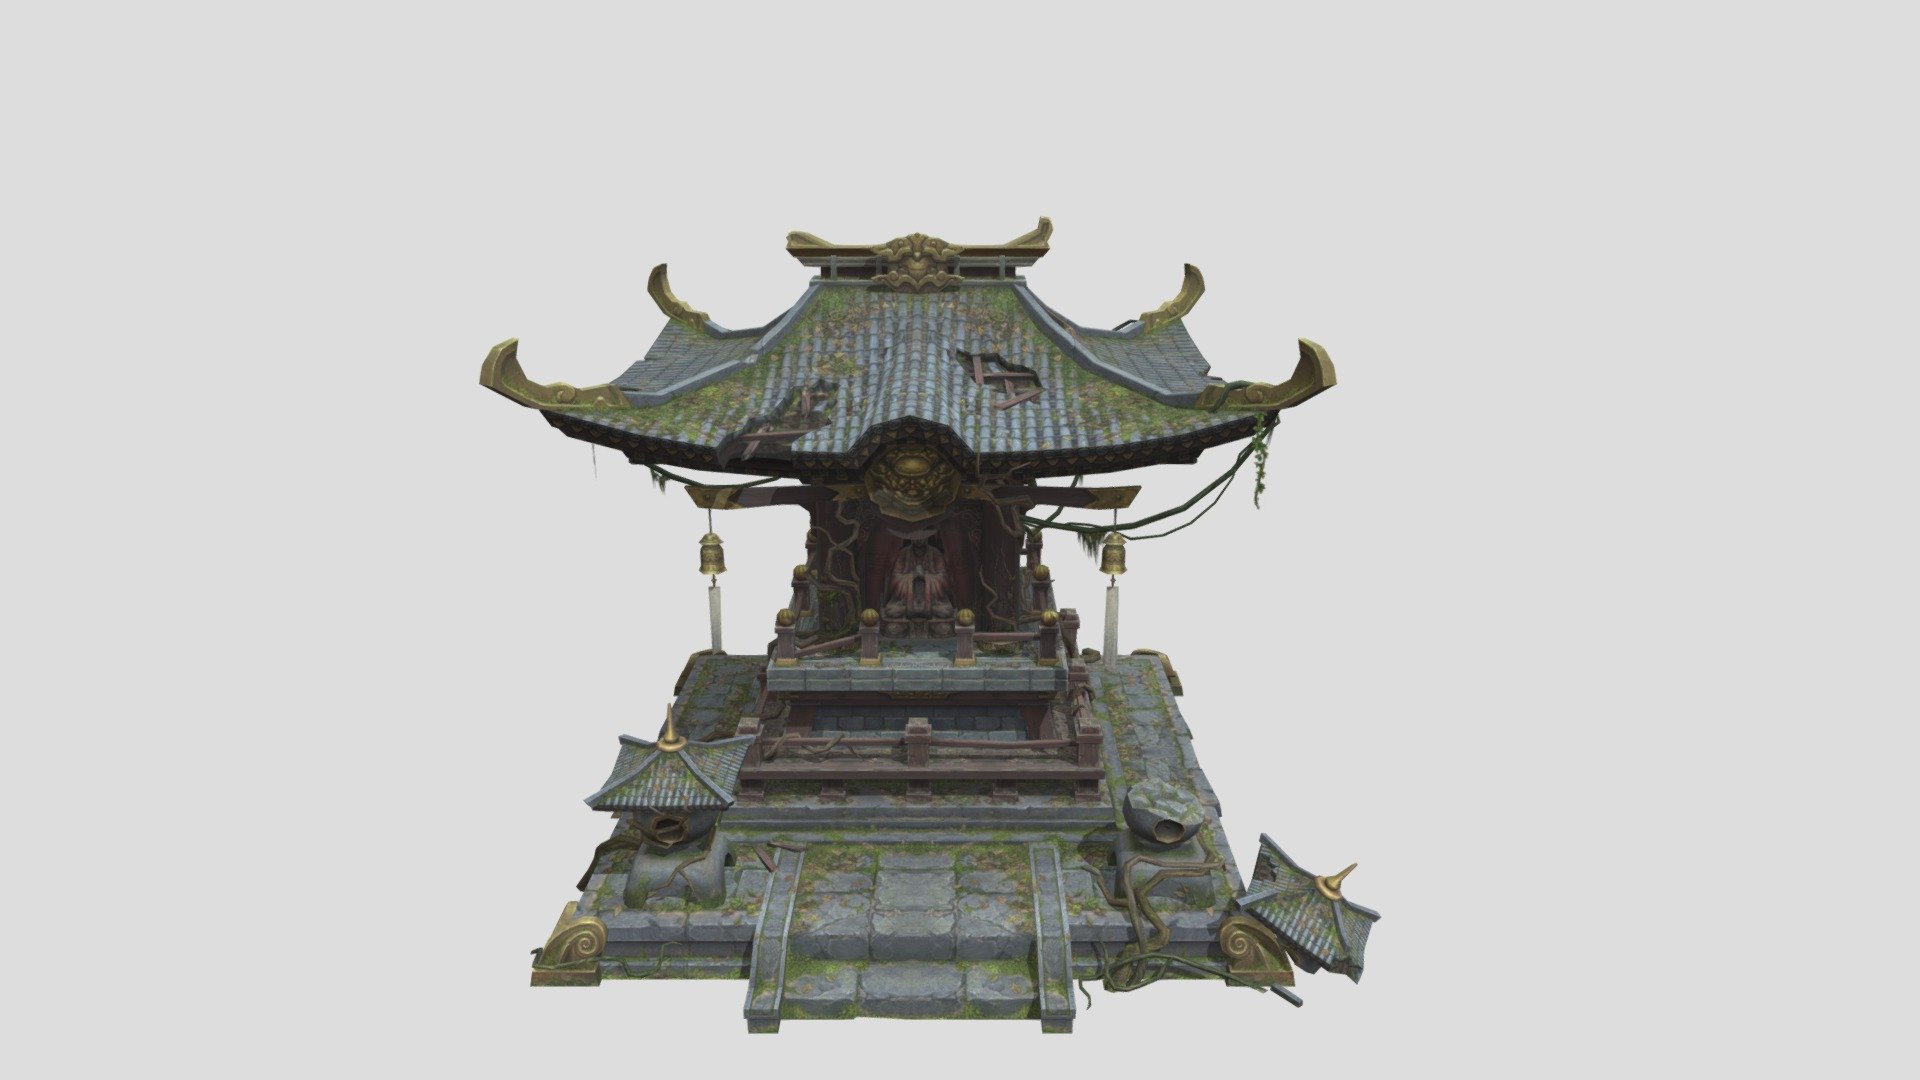 Hand painted broken buddhist shrines model for 3D game - Broken Buddhist shrines - 3D model by zangagames.com 3d model